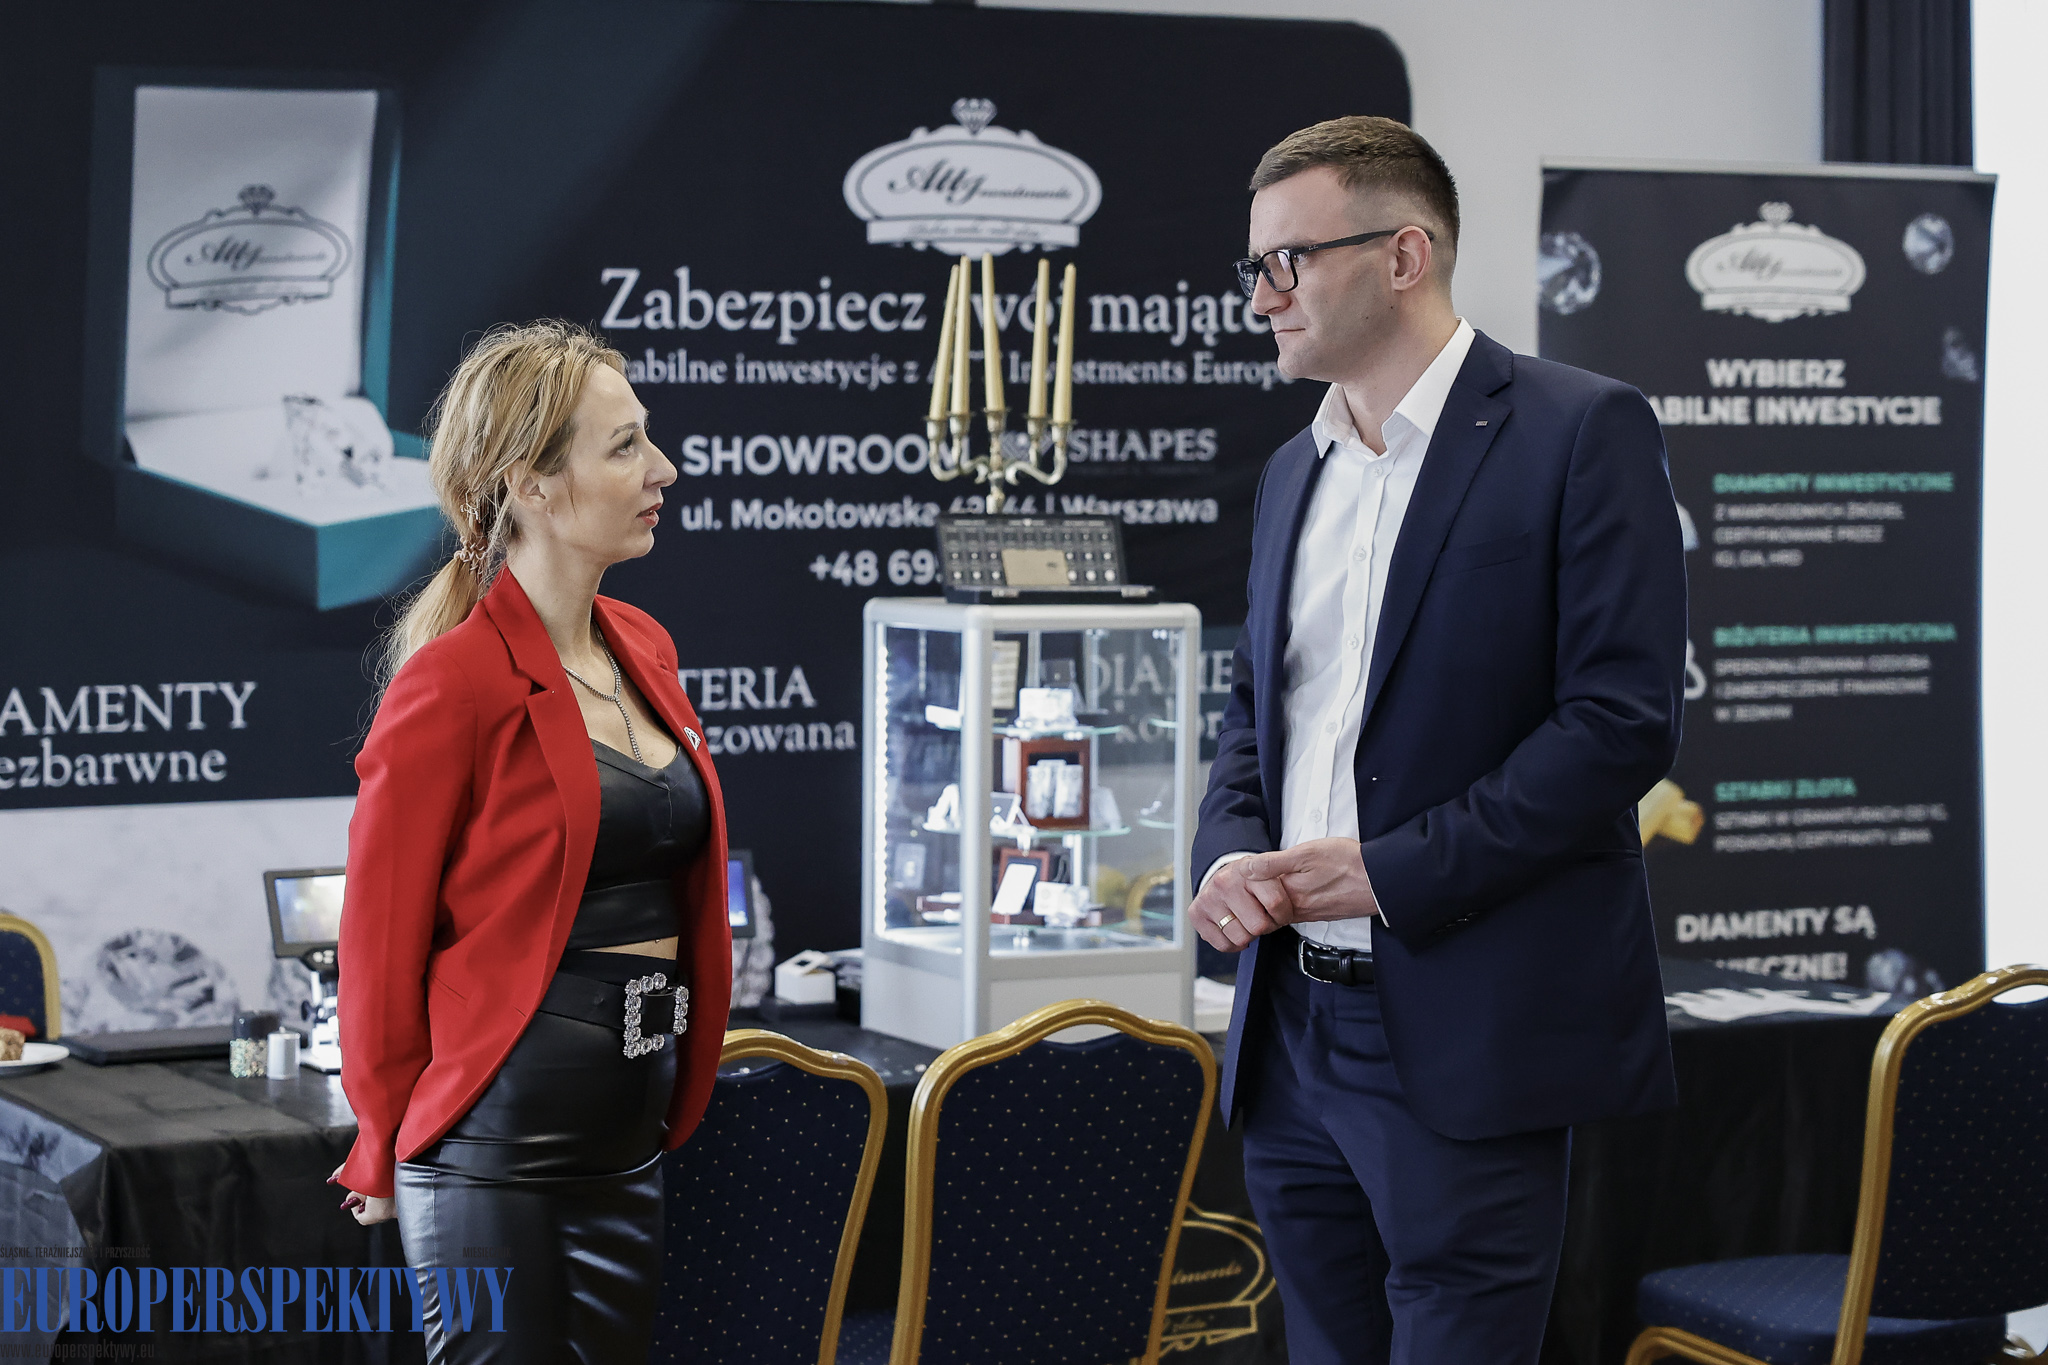 Europerspektywy Business Centre Club — Rynek pracy w Polsce